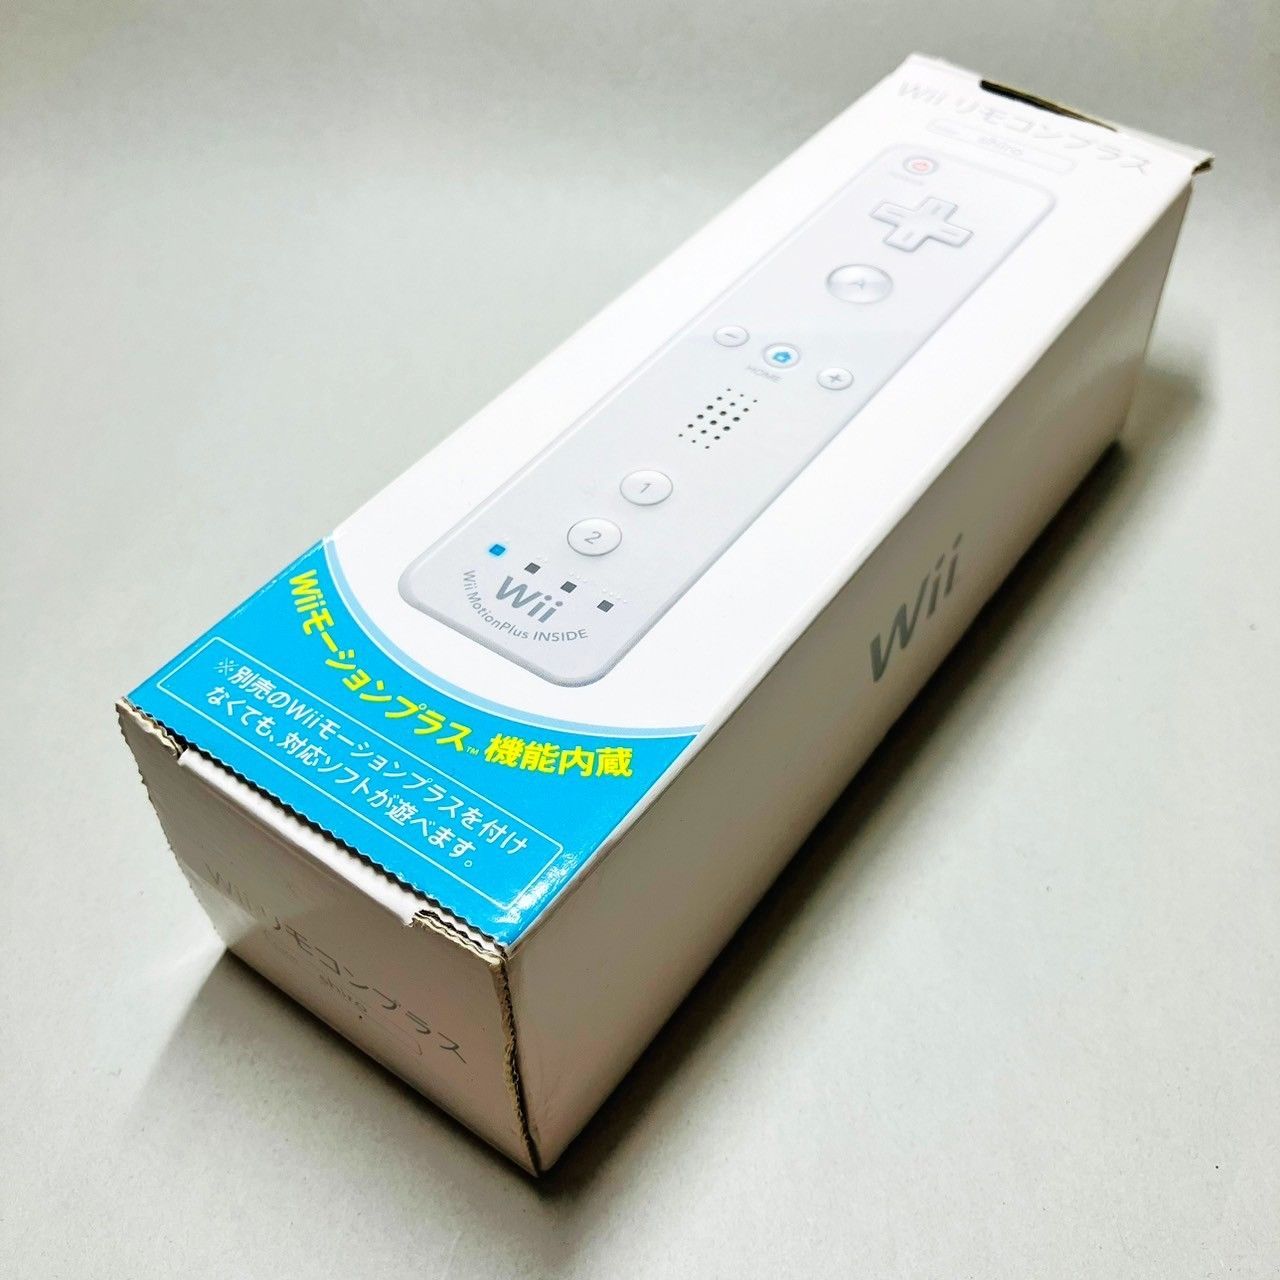 ◇【未使用品】 Nintendo Wii リモコンプラス shiro シロ 白 ホワイト 